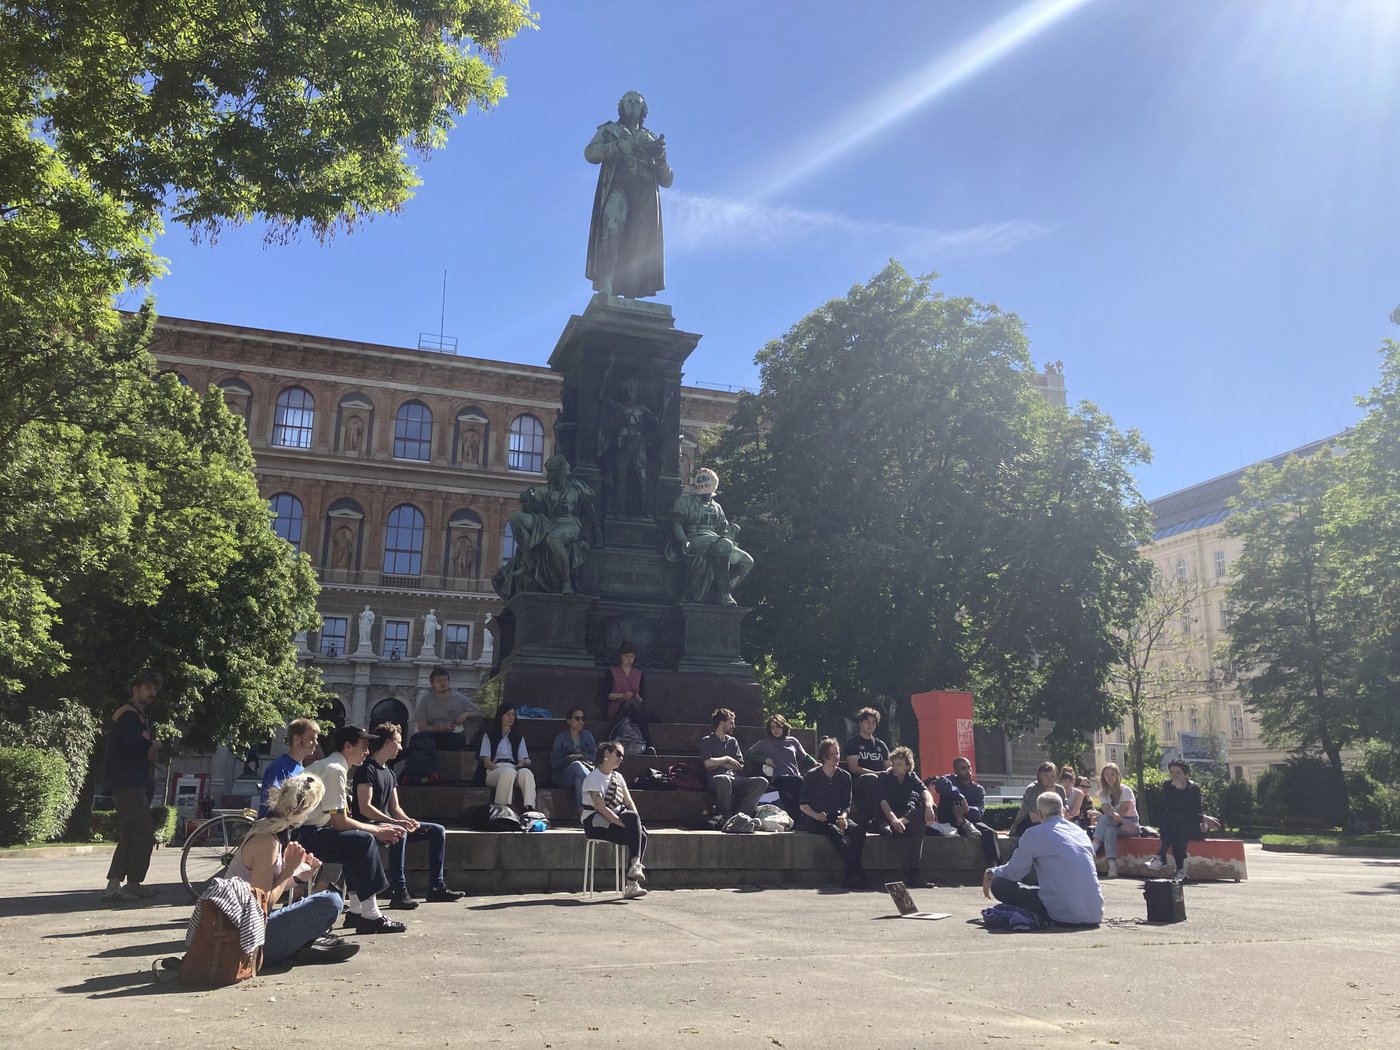 Das Bild zeigt eine Gruppe von Studierenden, die auf dem Sockel des Schillerdenkmales sitzen, offensichtlich in einer Unterrichtsituation. Es ist Sommer und man sieht das barocke Denkmal mit Friedrich Schiller, einige Bäume und dahinter das Gründerzeitgebäude der Akademie.